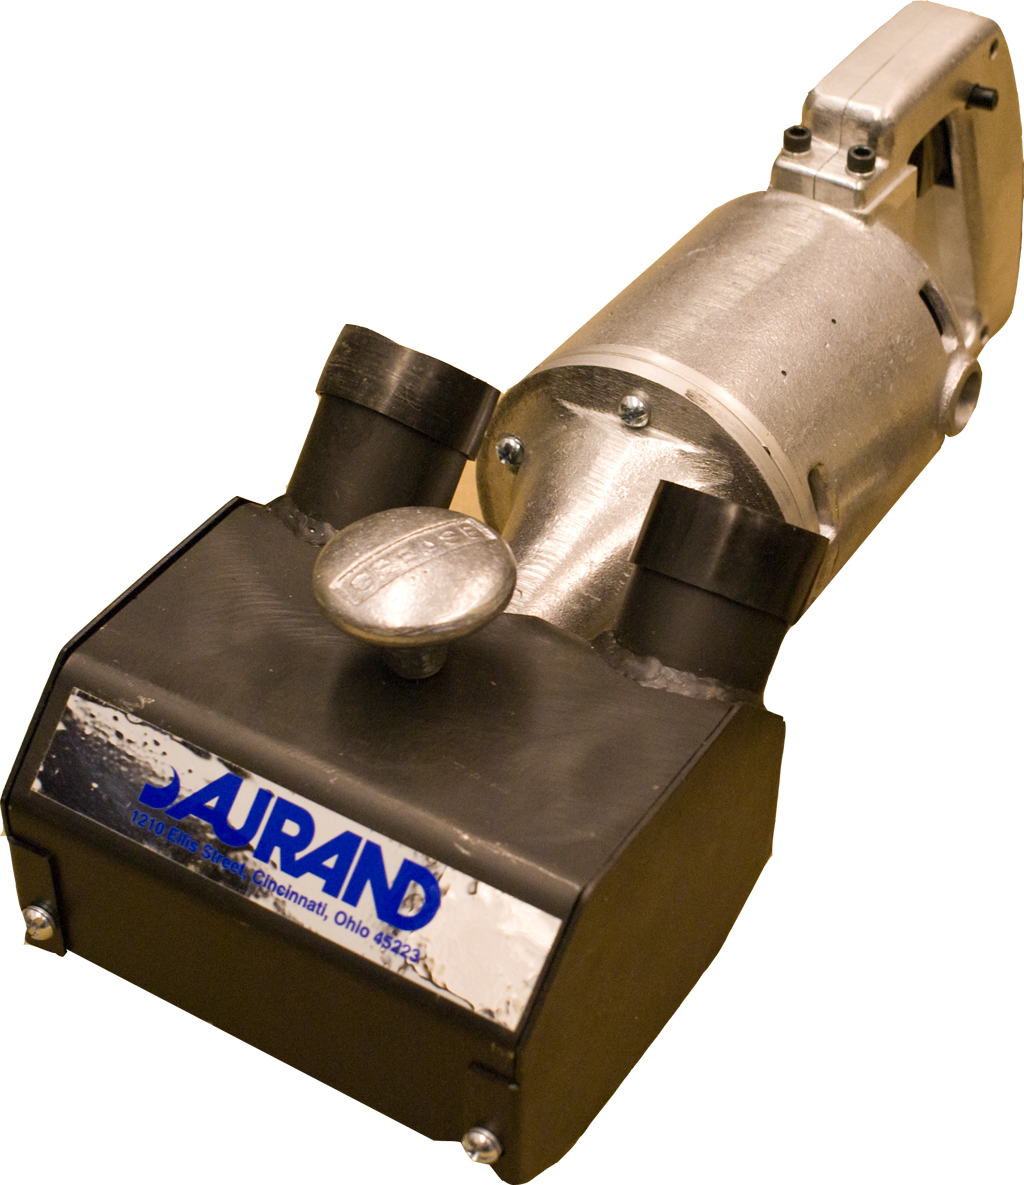 Aurand 8" vacuum shroud dust collector